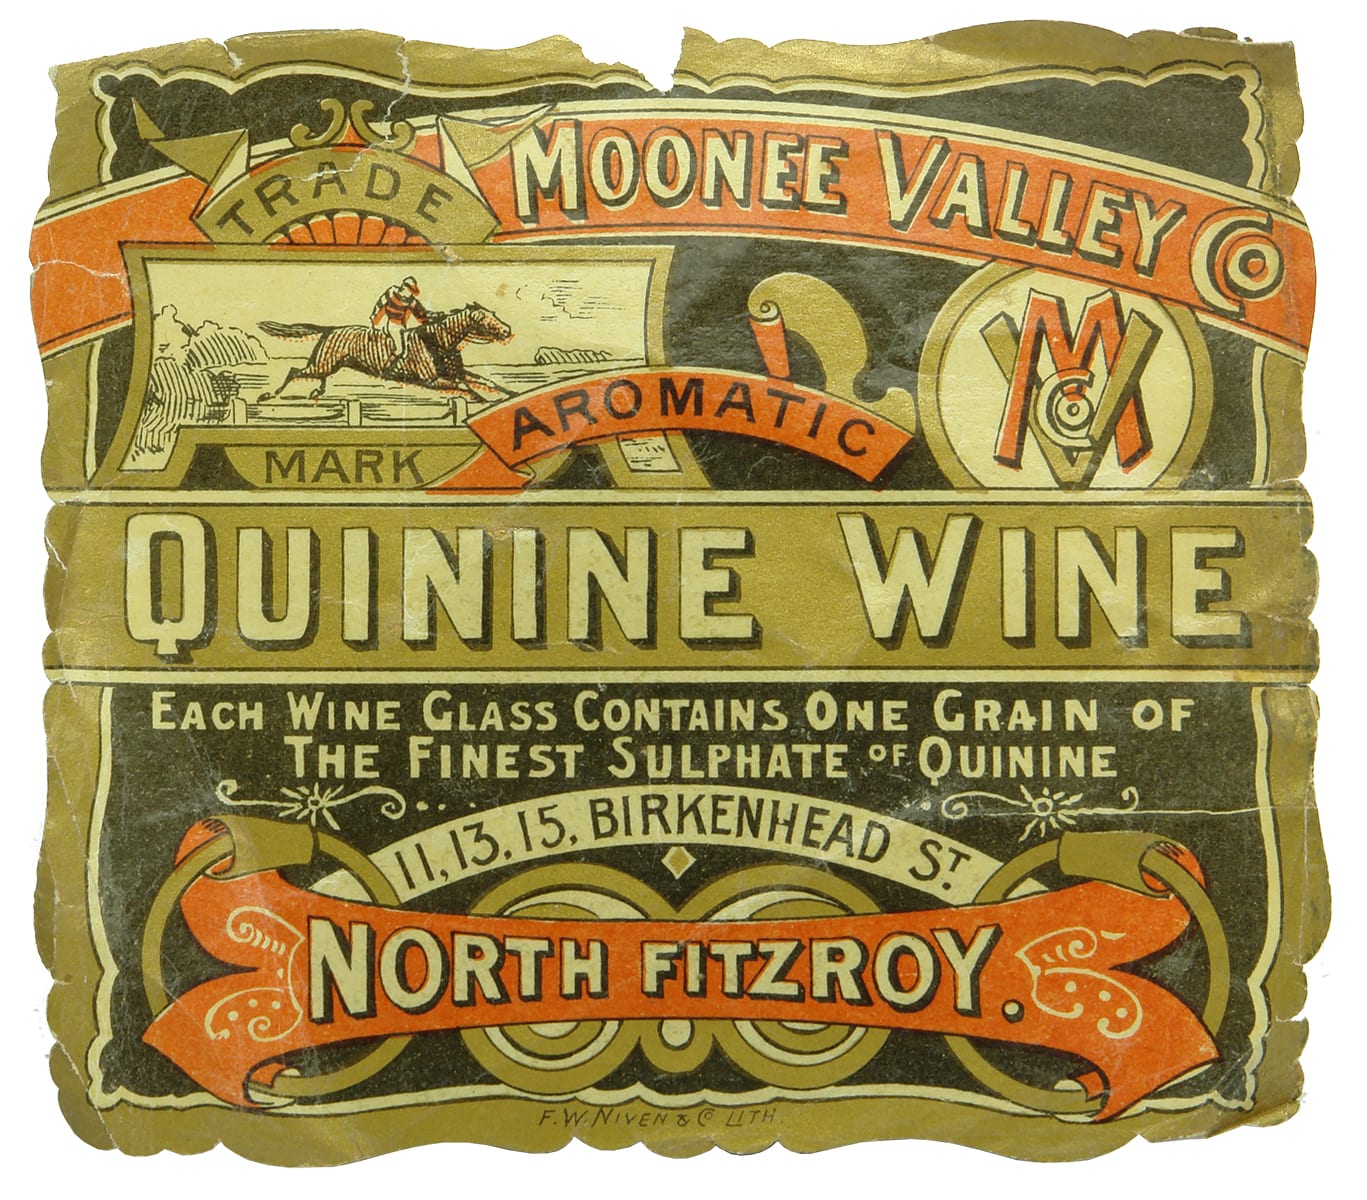 Moonee Valley Quinine Wine Antique Label